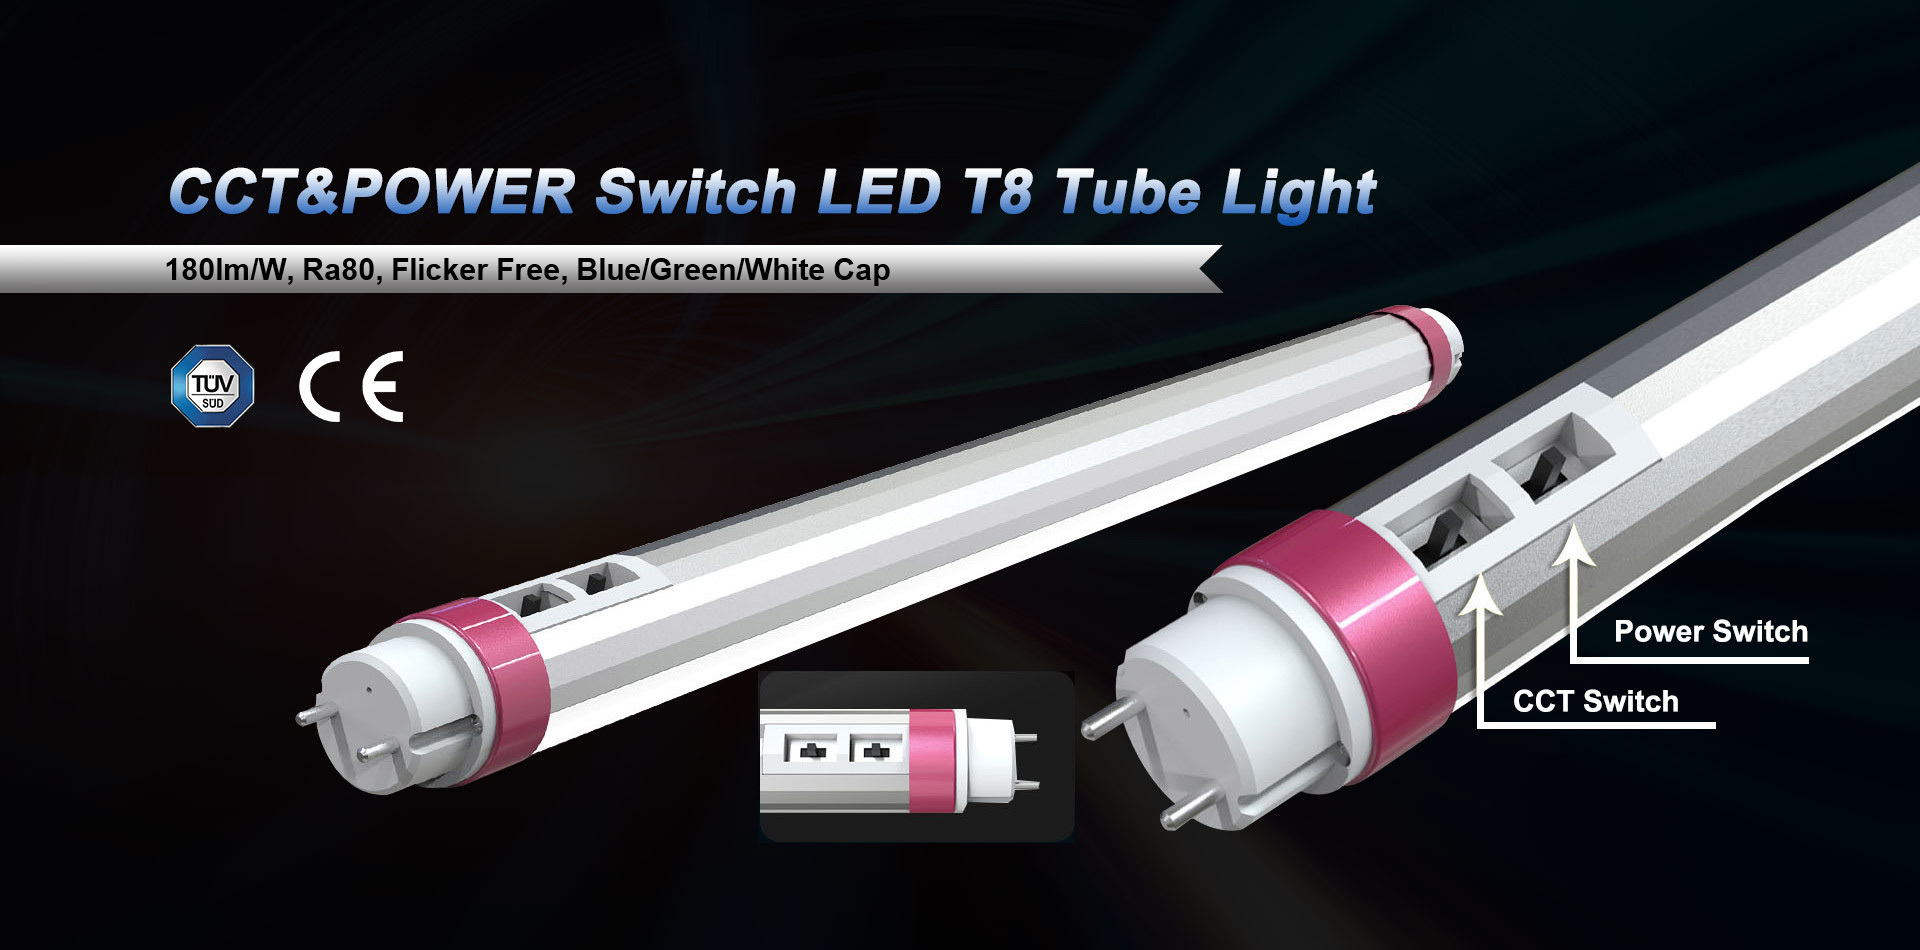 Power & CCT Switchable T8 LED Tube